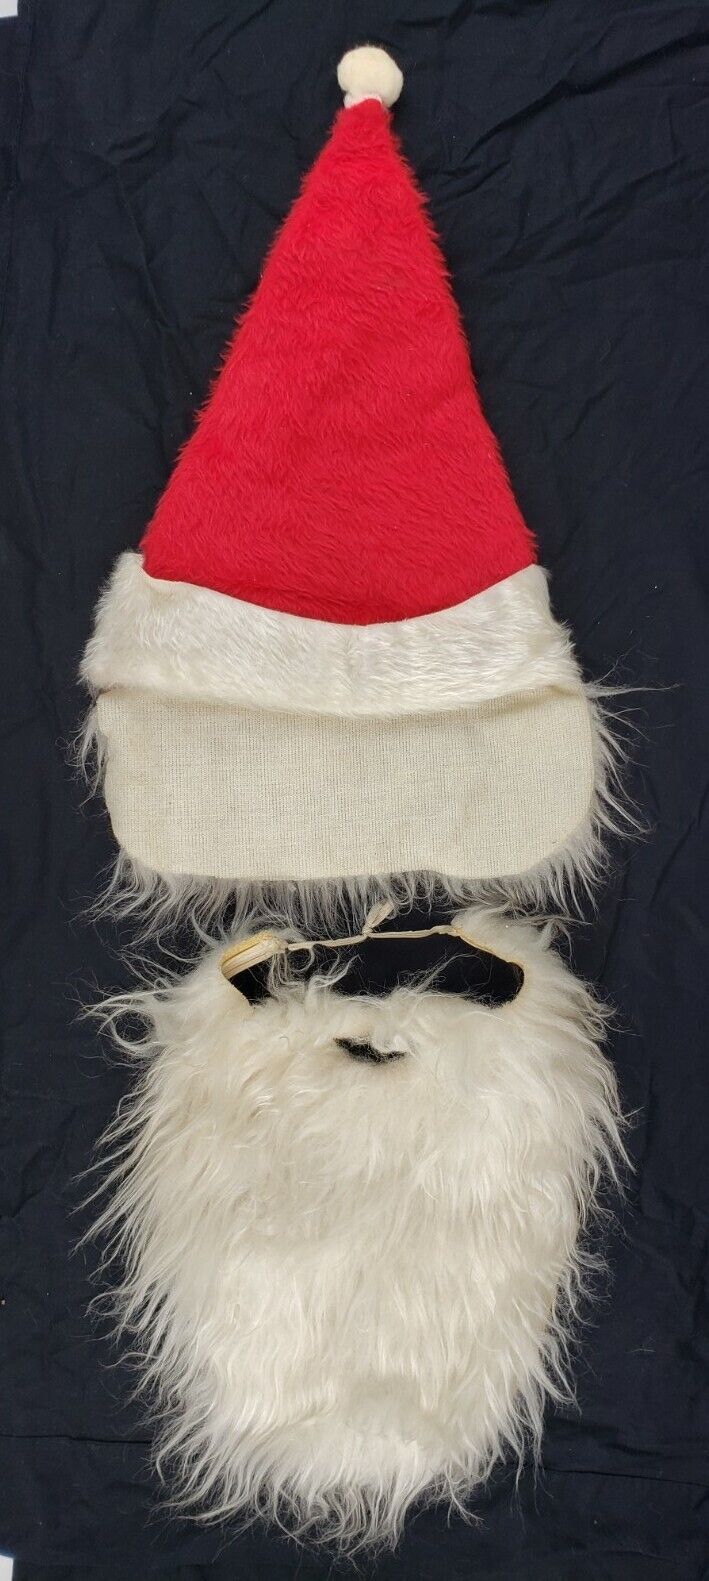 Vintage Original c1950’s Santa Claus Hat & Beard Christmas Costume Old Xmas Tree